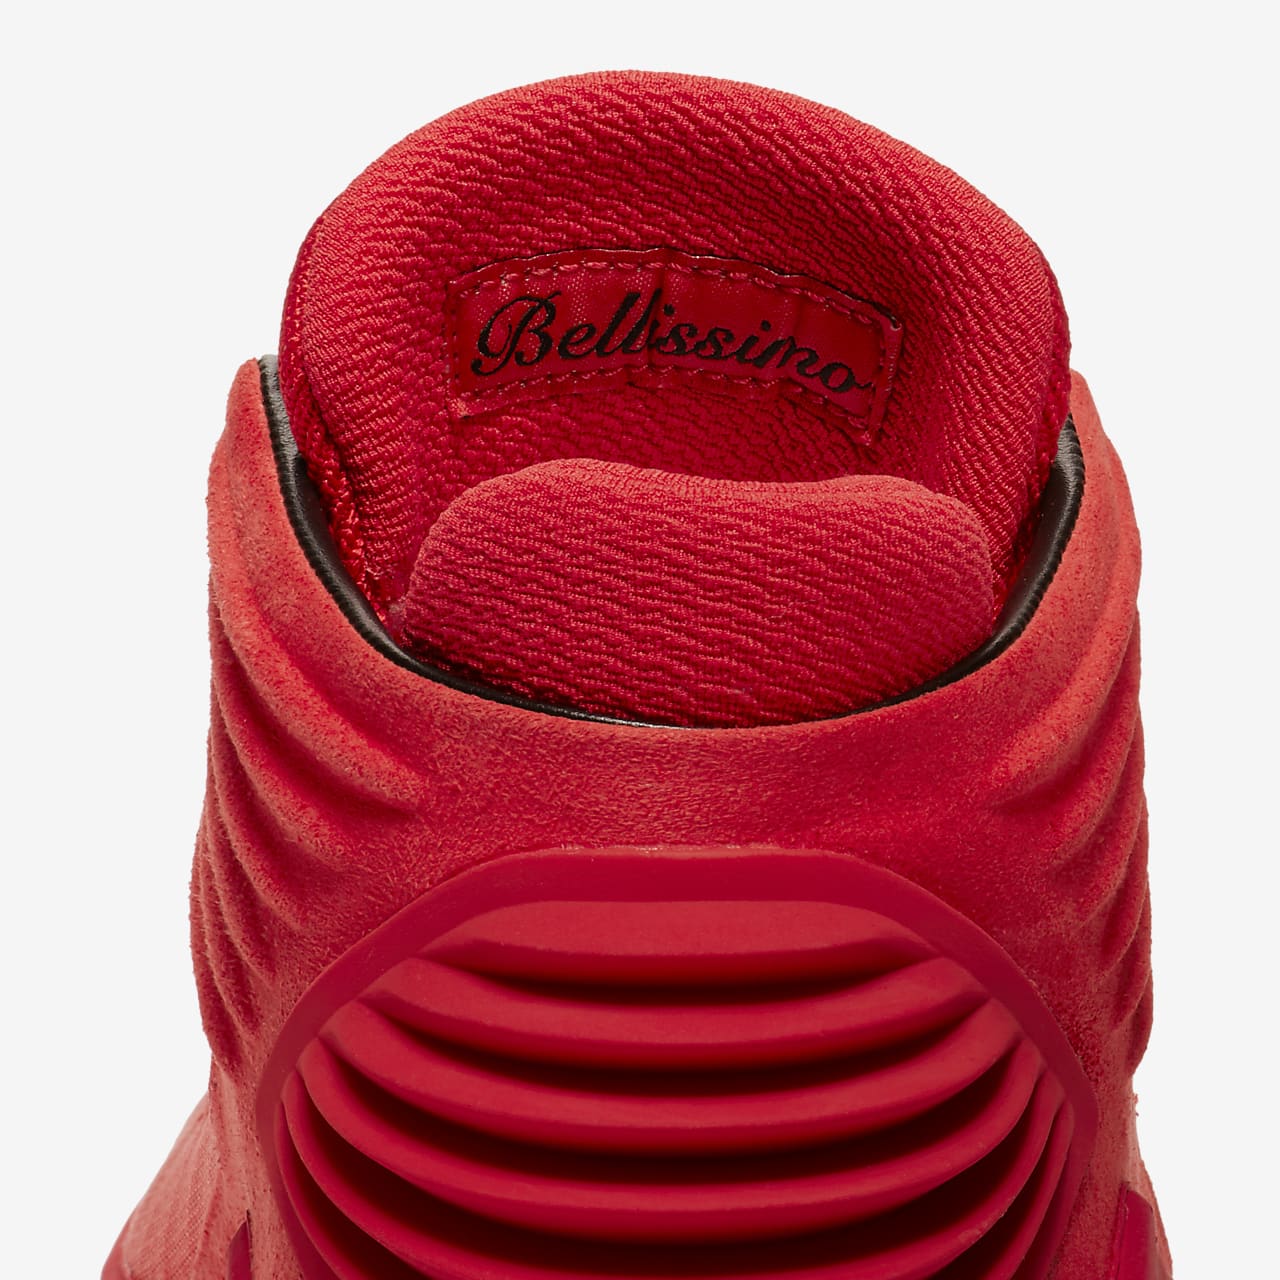 Anguila Sobriqueta Desacuerdo Air Jordan XXXII "Rosso Corsa" Men's Basketball Shoe. Nike ID